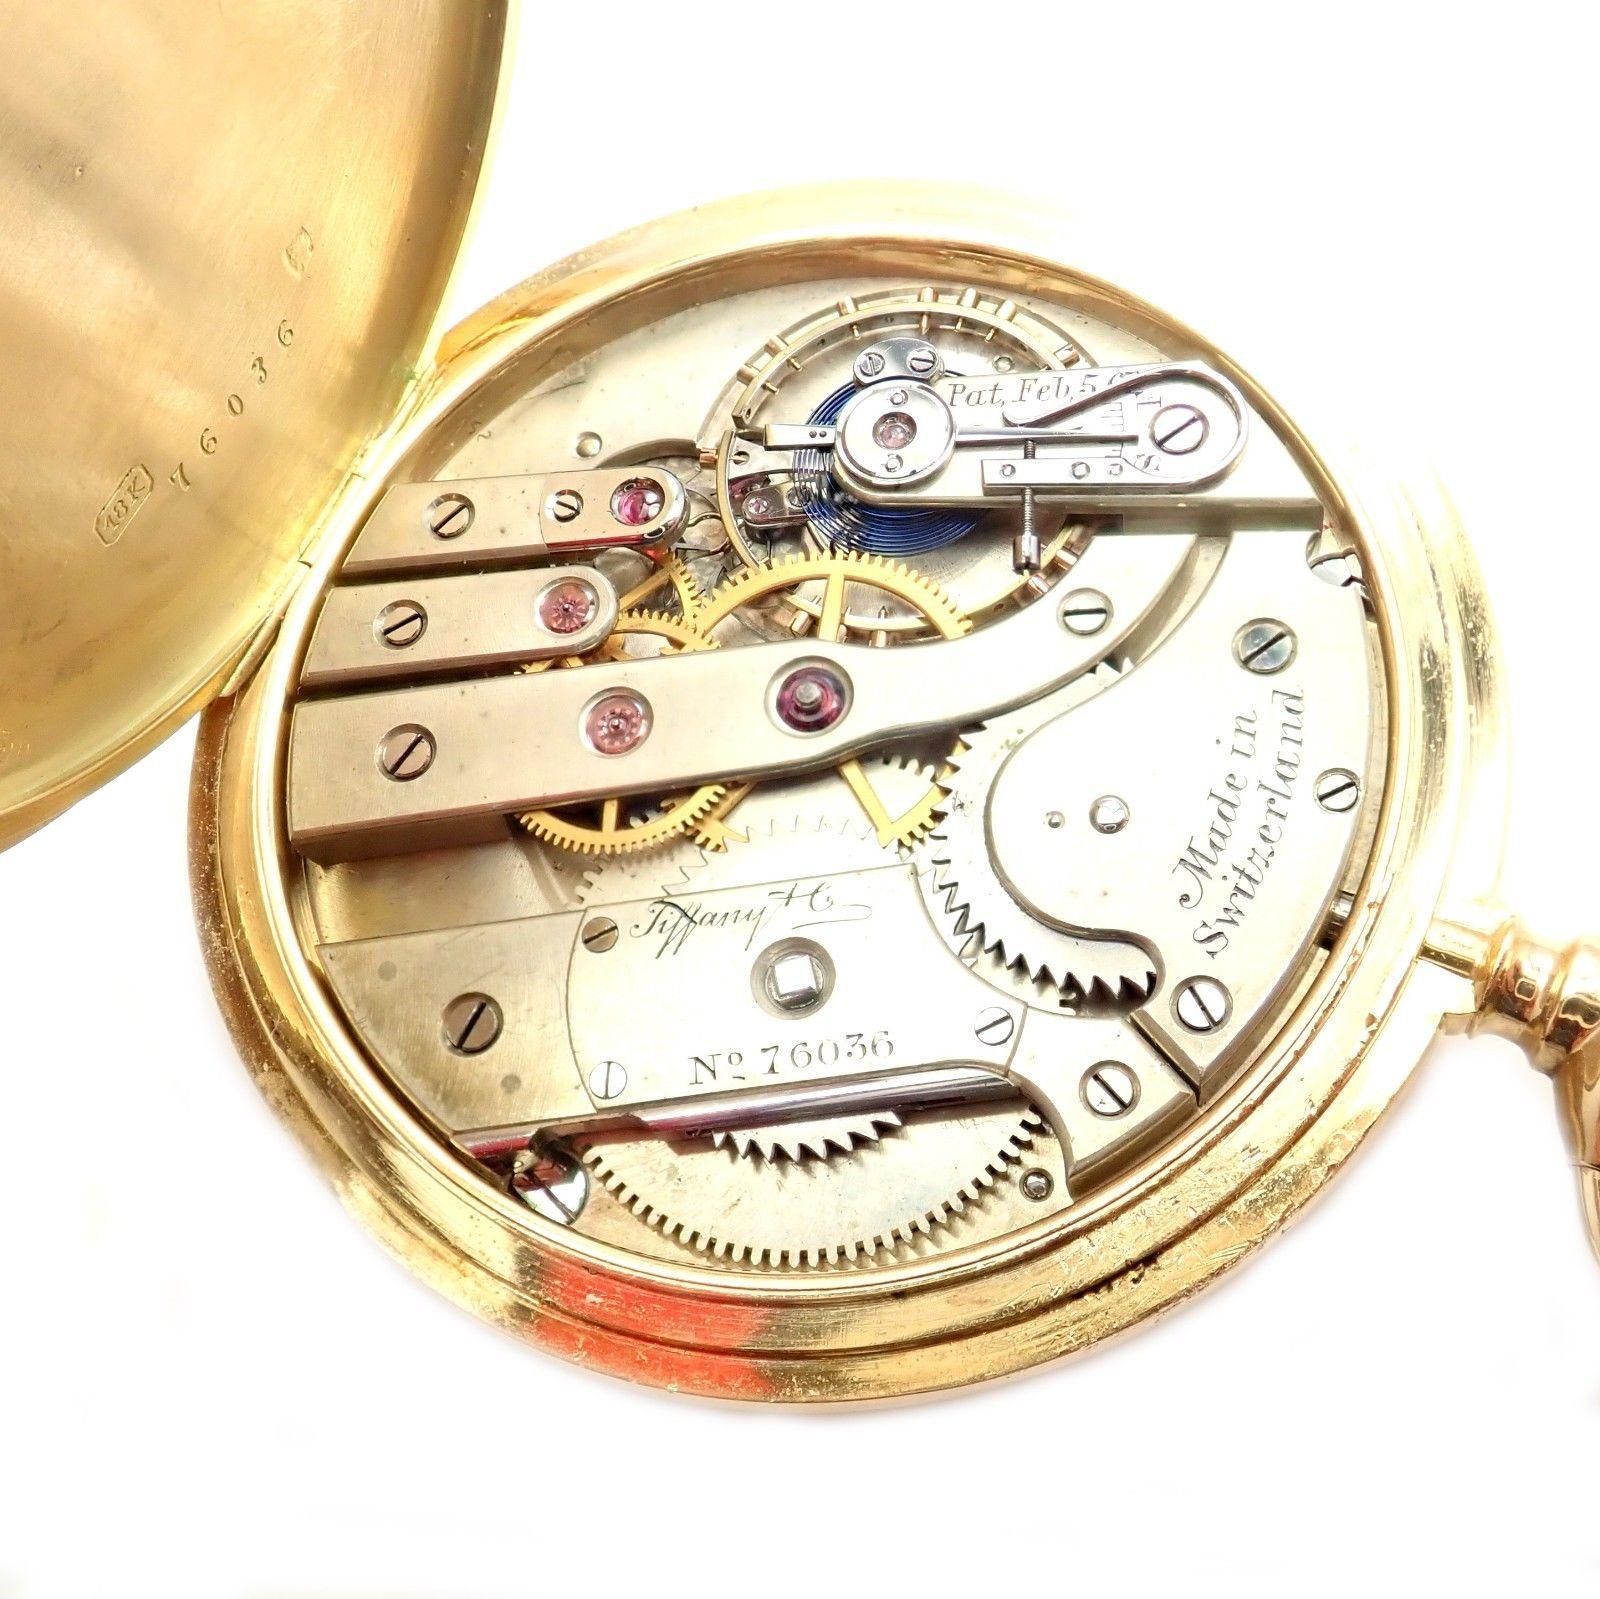 1890 tiffany pocket watch